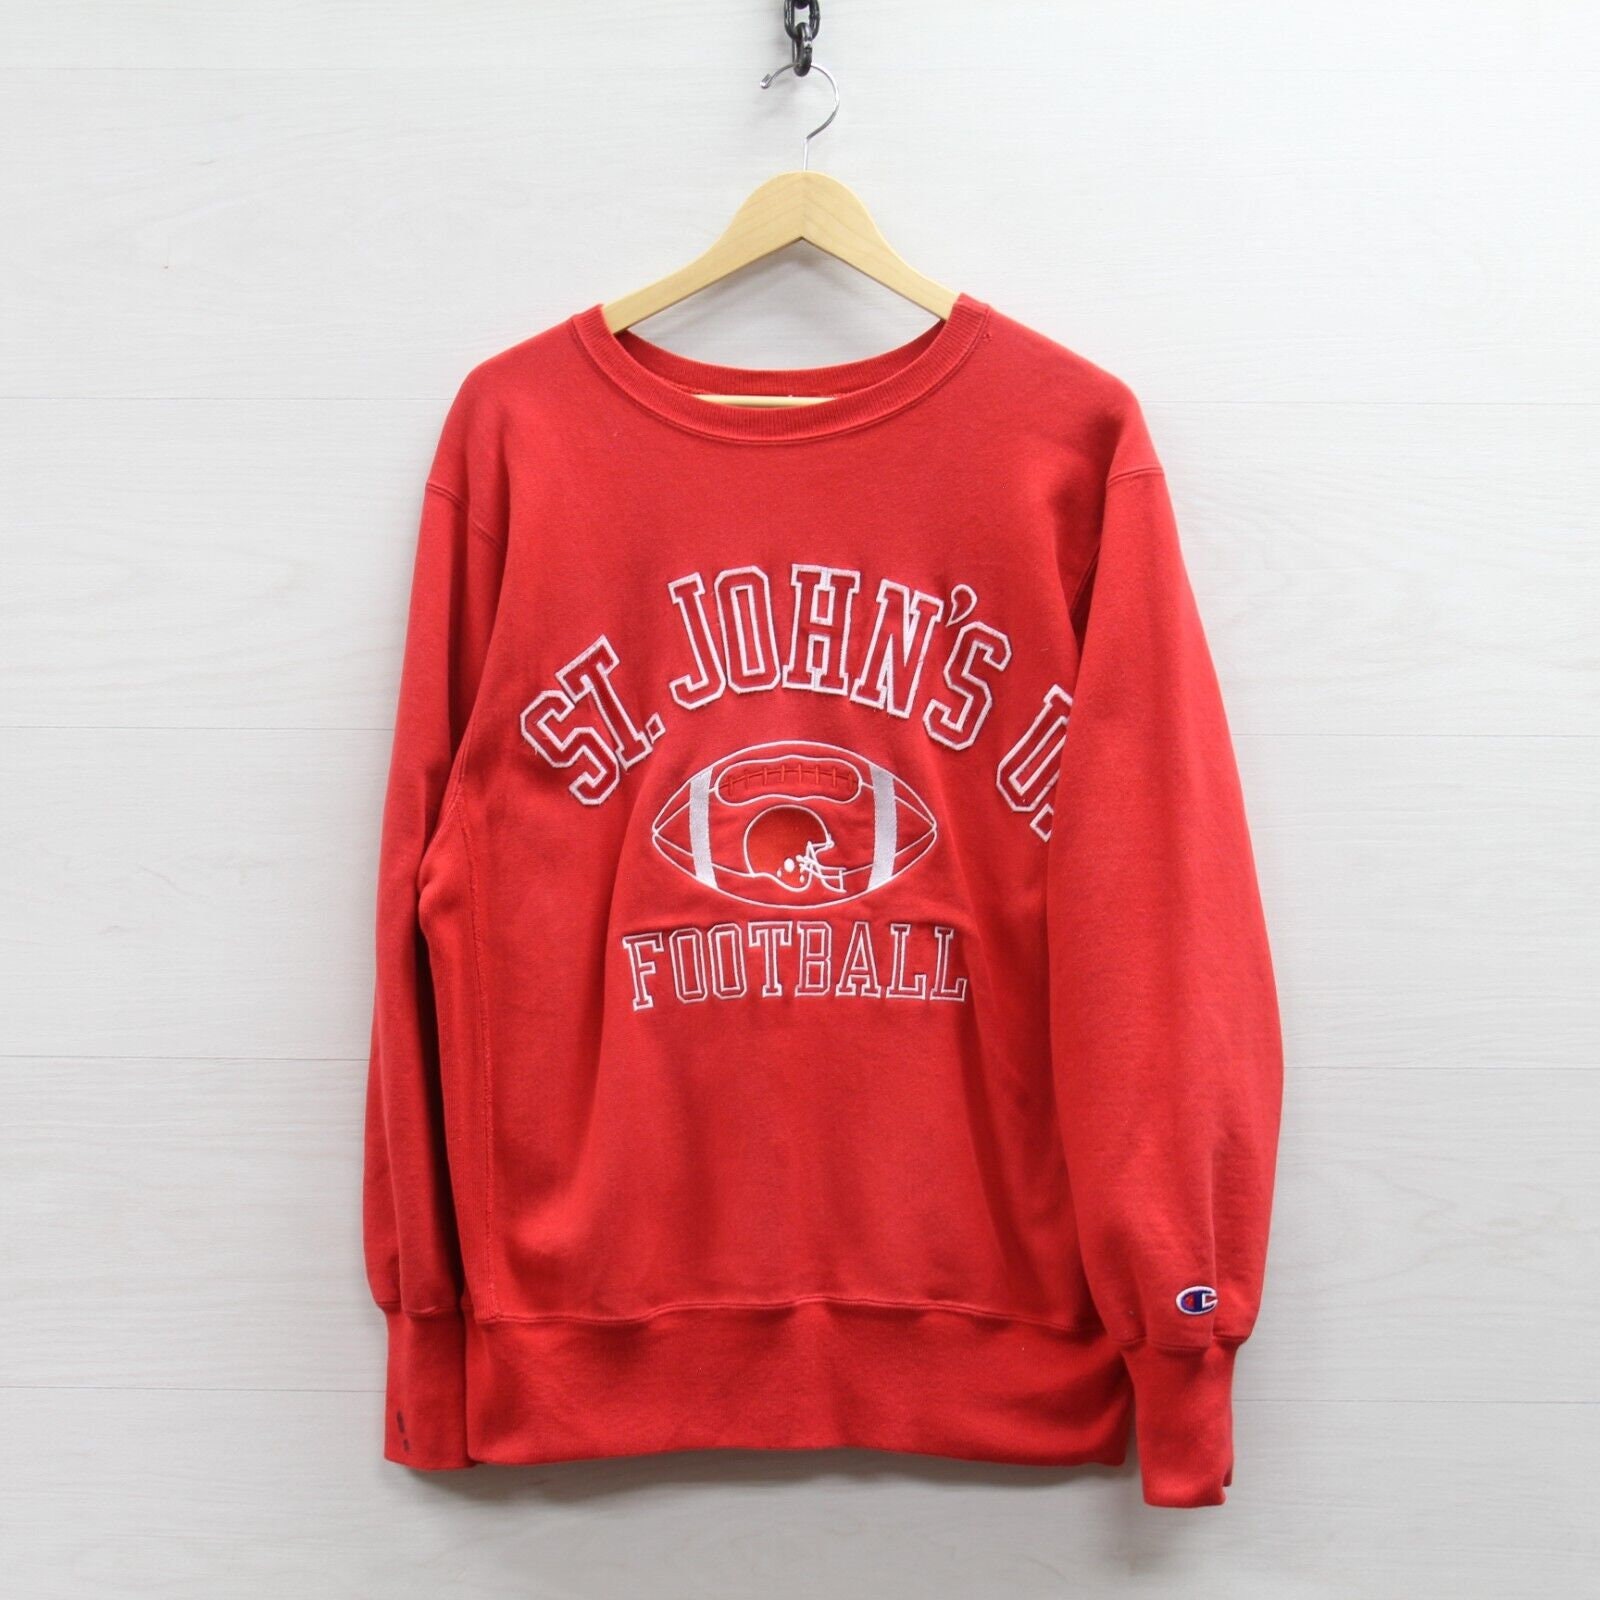 Kleding Herenkleding Hoodies & Sweatshirts Vintage St Johns Red Storm Voetbal Kampioen Sweatshirt Crewneck Grote jaren '90 NCAA 